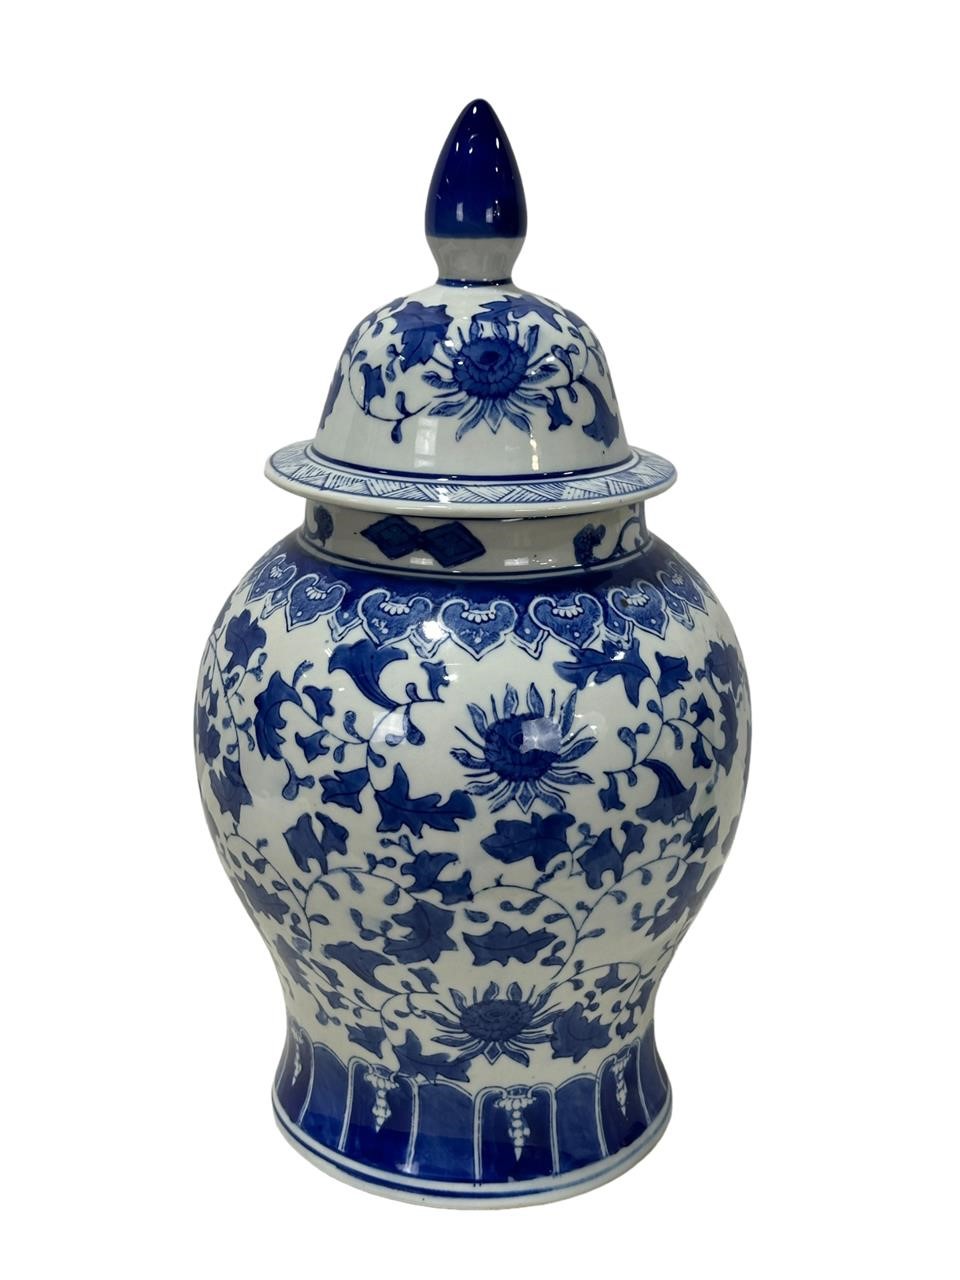 Asian Blue & White Porcelain Urn